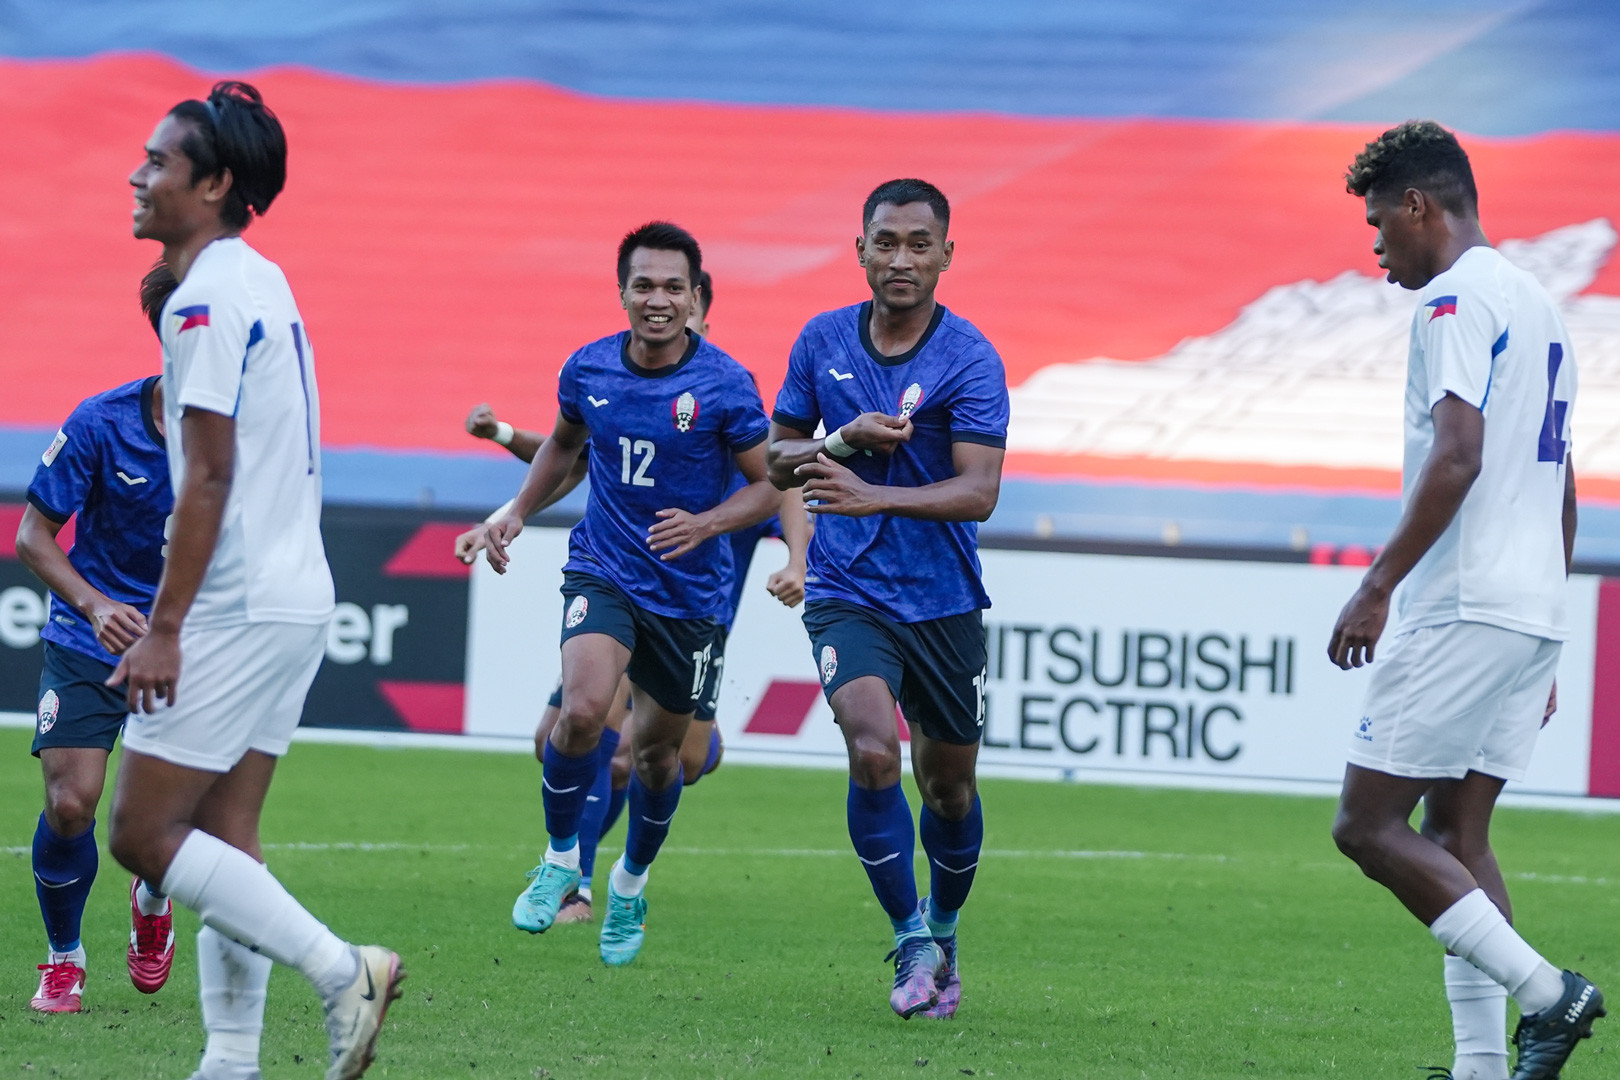 Campuchia để lại sự phấn khích với chiến thắng 3-2 trước Philippines